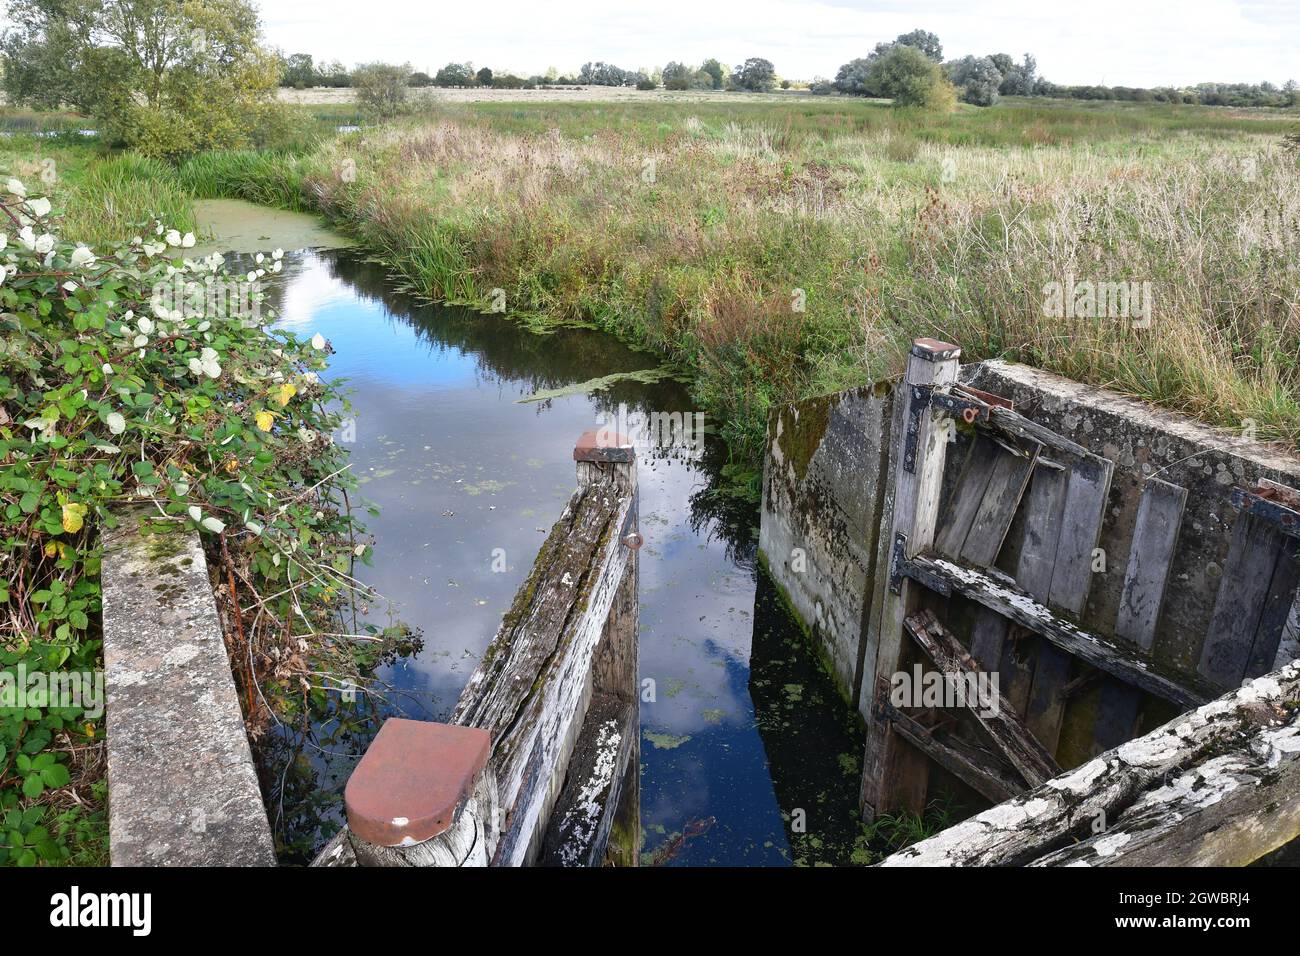 Disused sluice gates on the River, at RSPB Fen Drayton, Cambridgeshire, UK Stock Photo